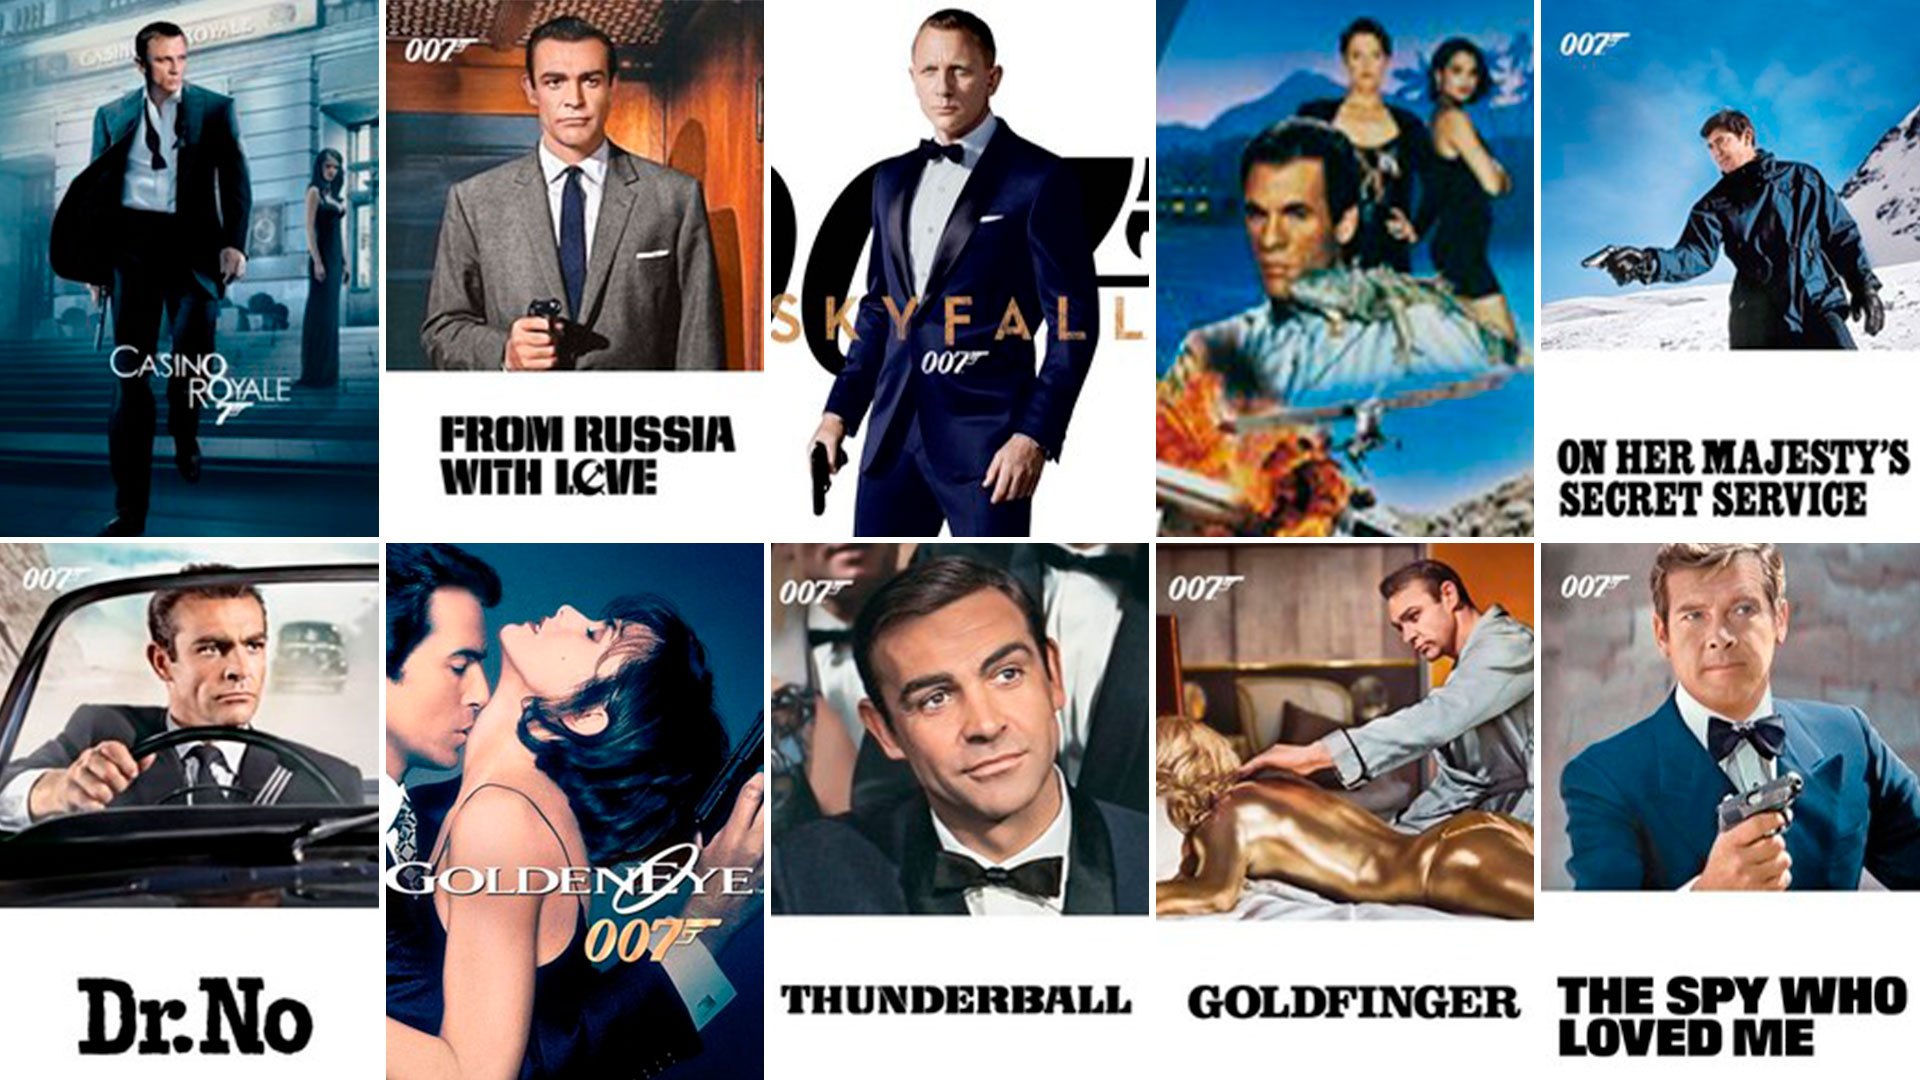 Las 10 Mejores Peliculas De James Bond Del Trailer Donde Daniel Craig Se Despide De 007 Al Ranking De La Critica Infobae